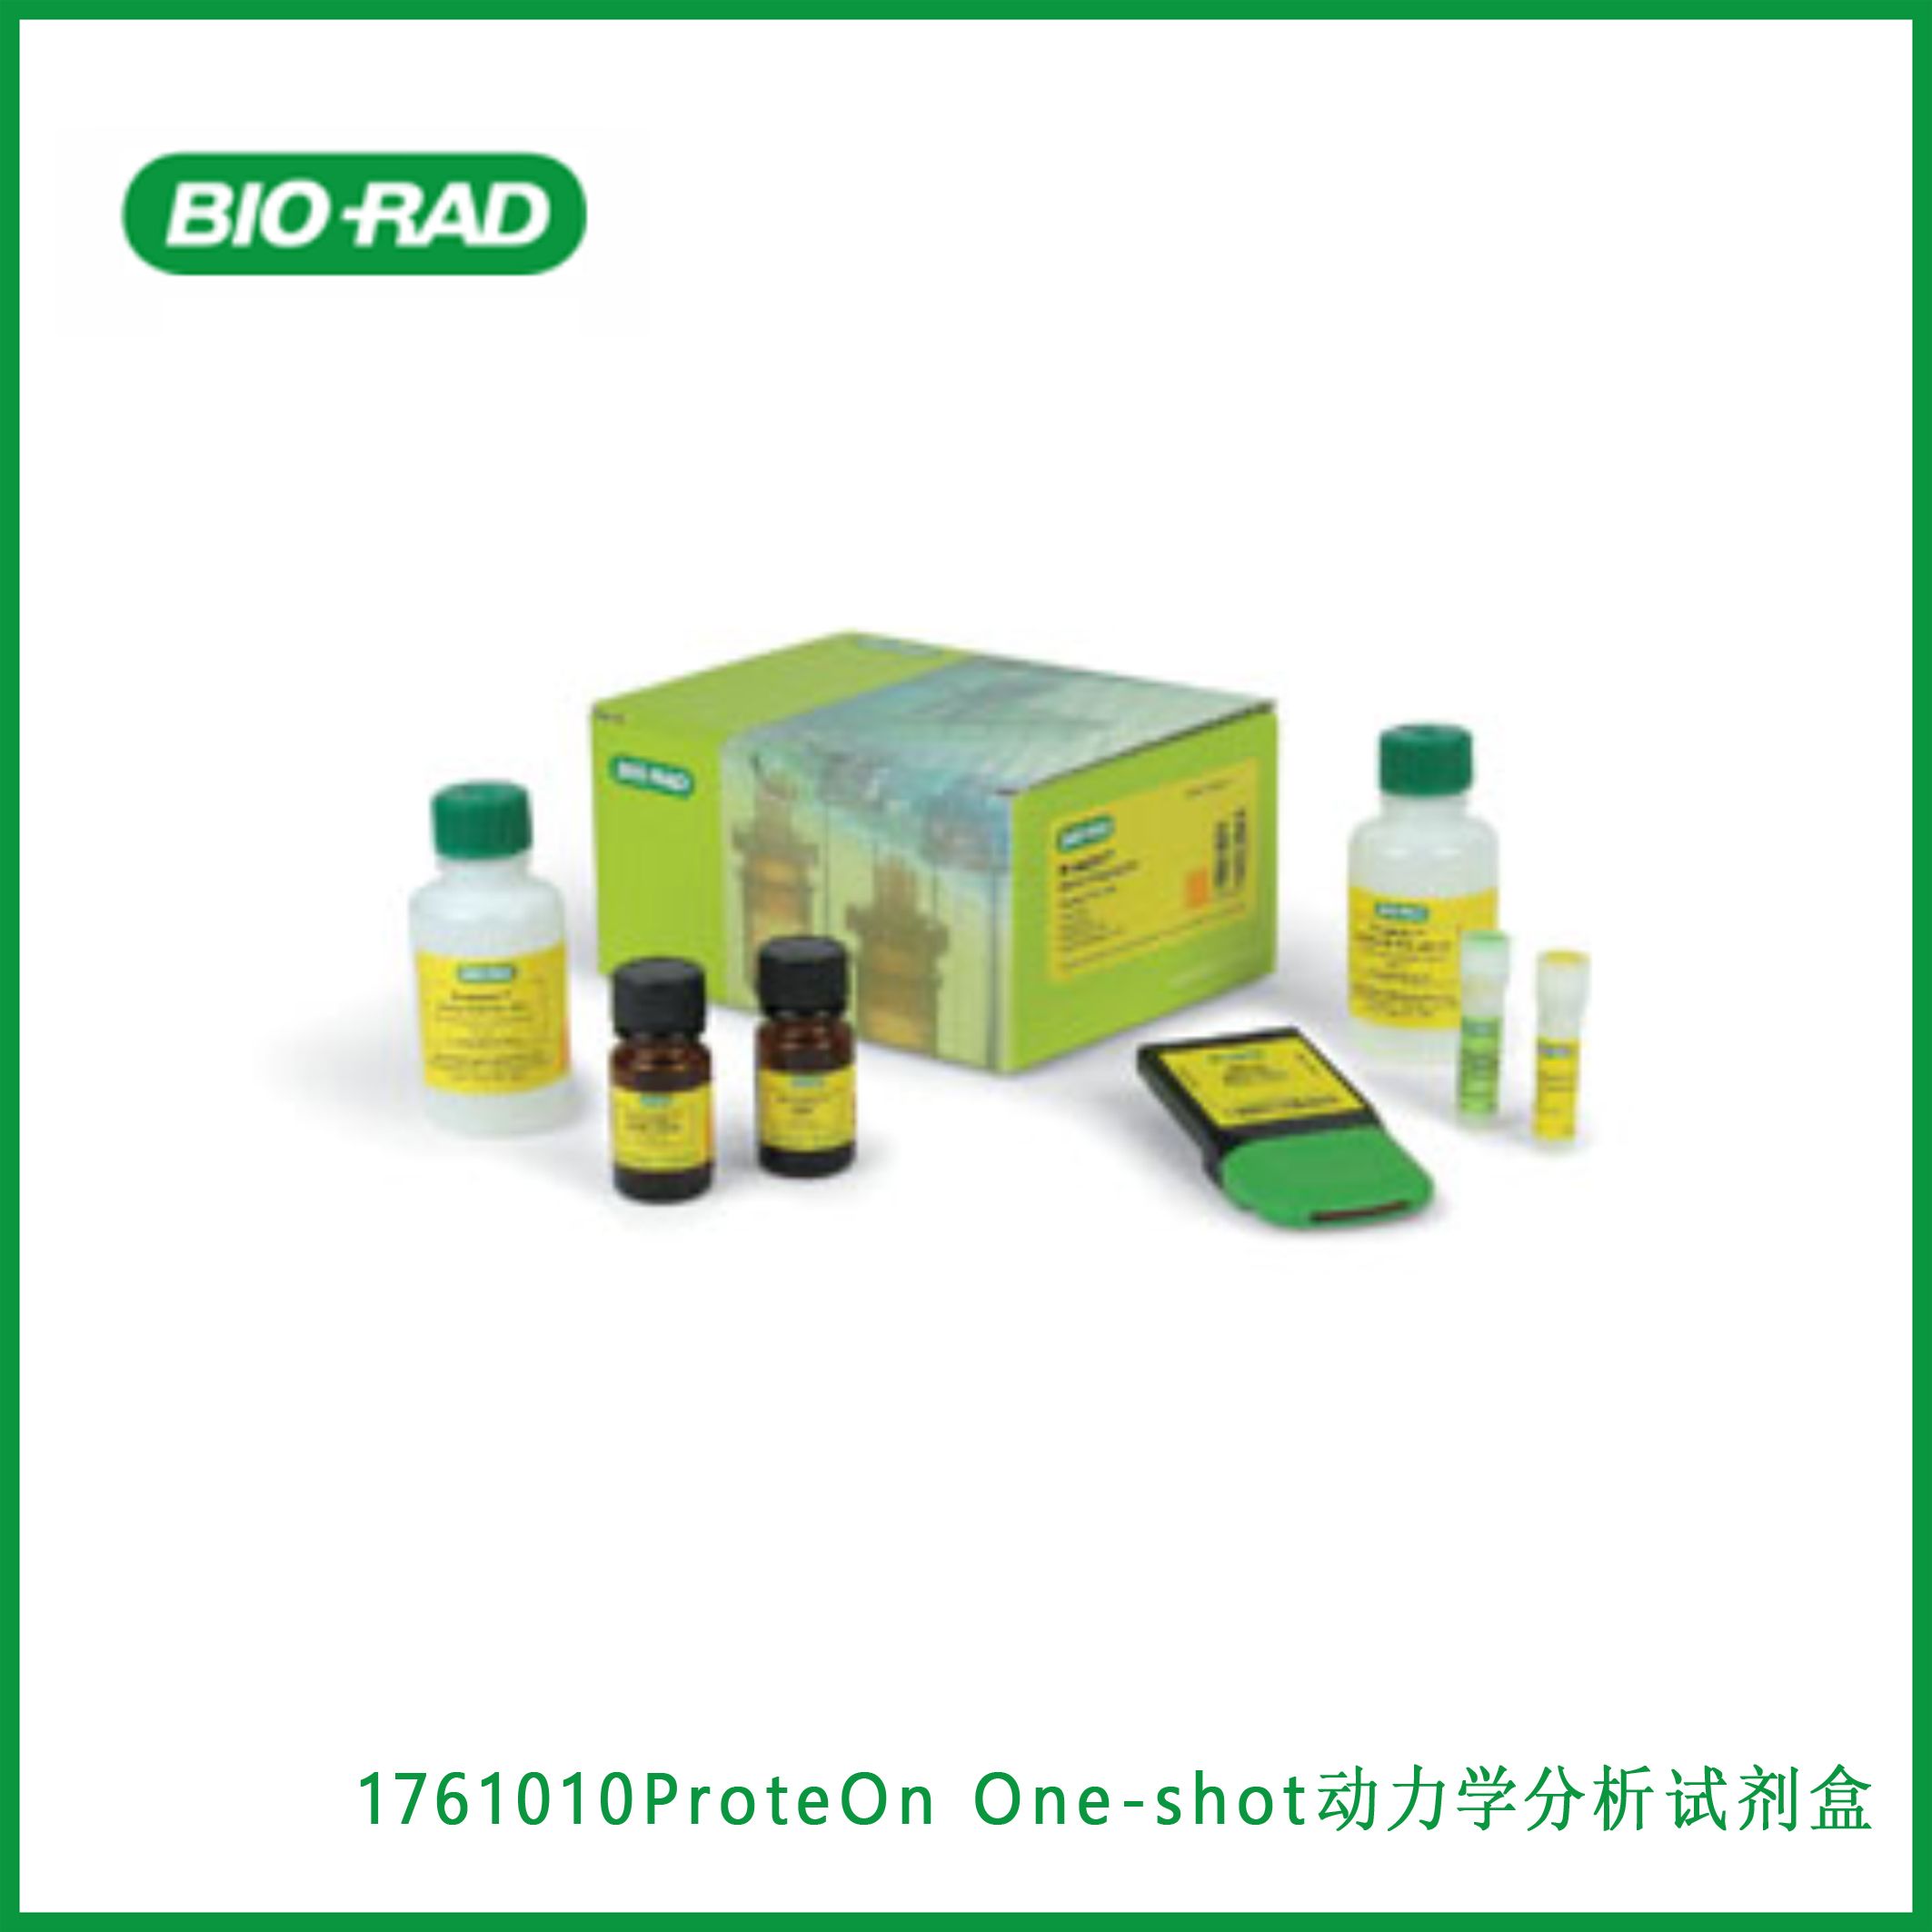 伯乐Bio-Rad 1761010 ProteOn™ One-shot Kinetics Kit， ProteOn™ One-shot动力学分析试剂盒，现货